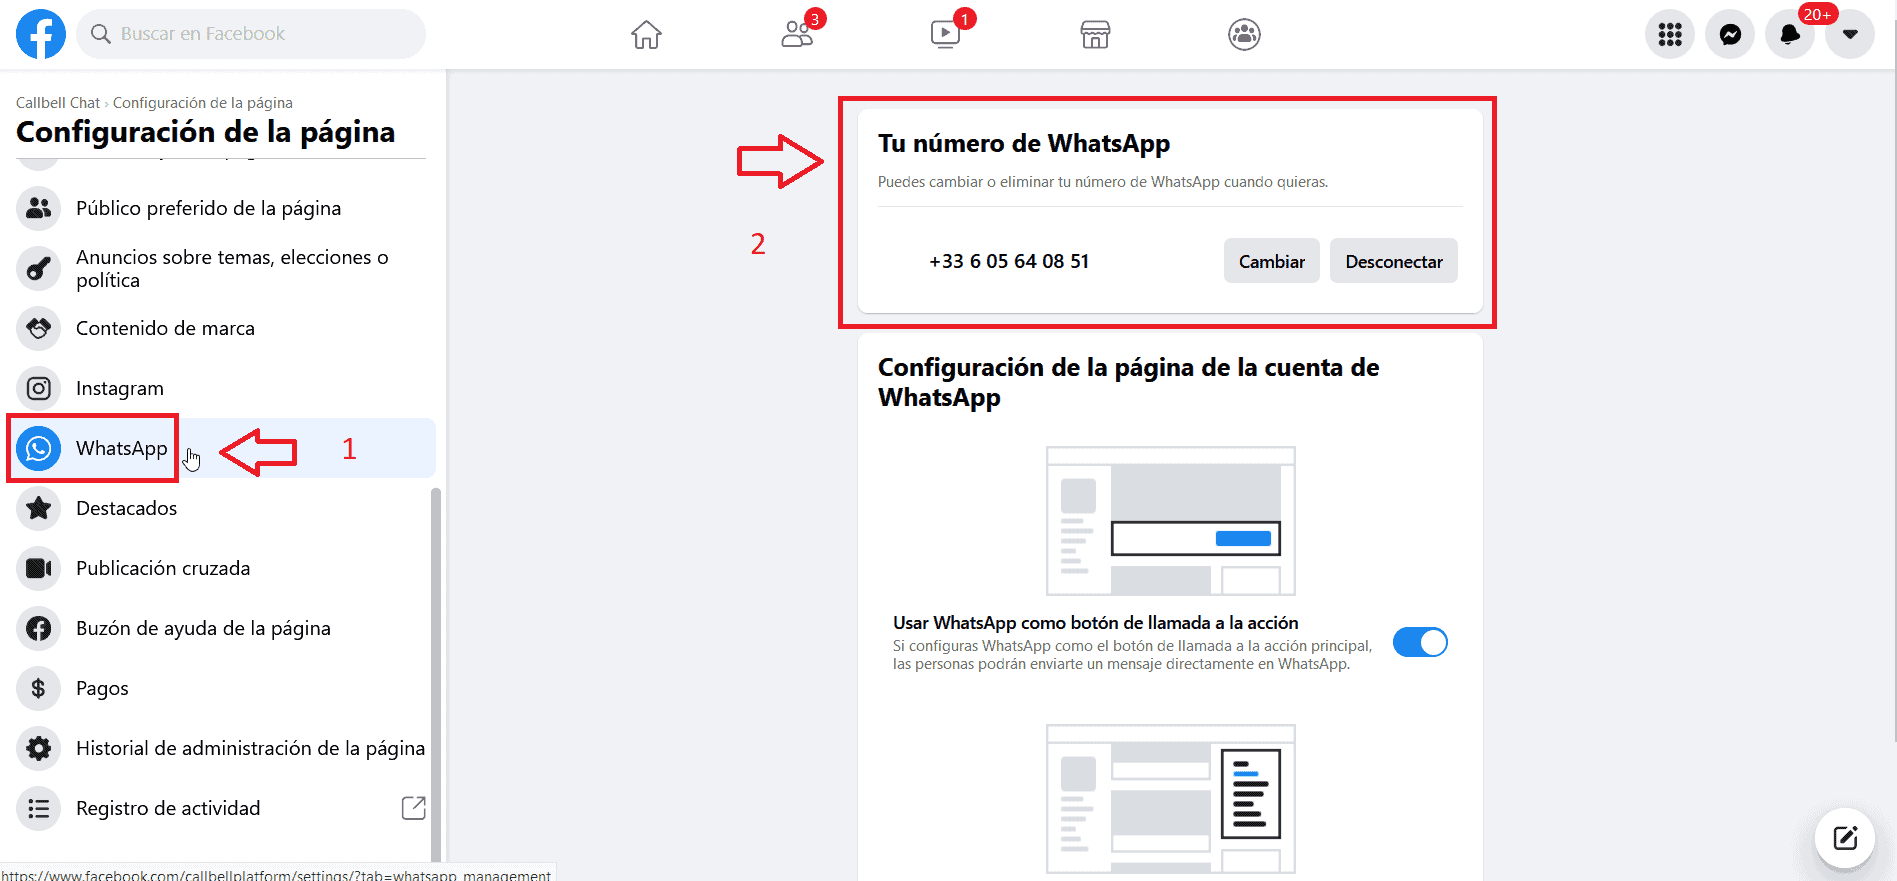 ¿Cómo agregar el botón de WhatsApp a un post?